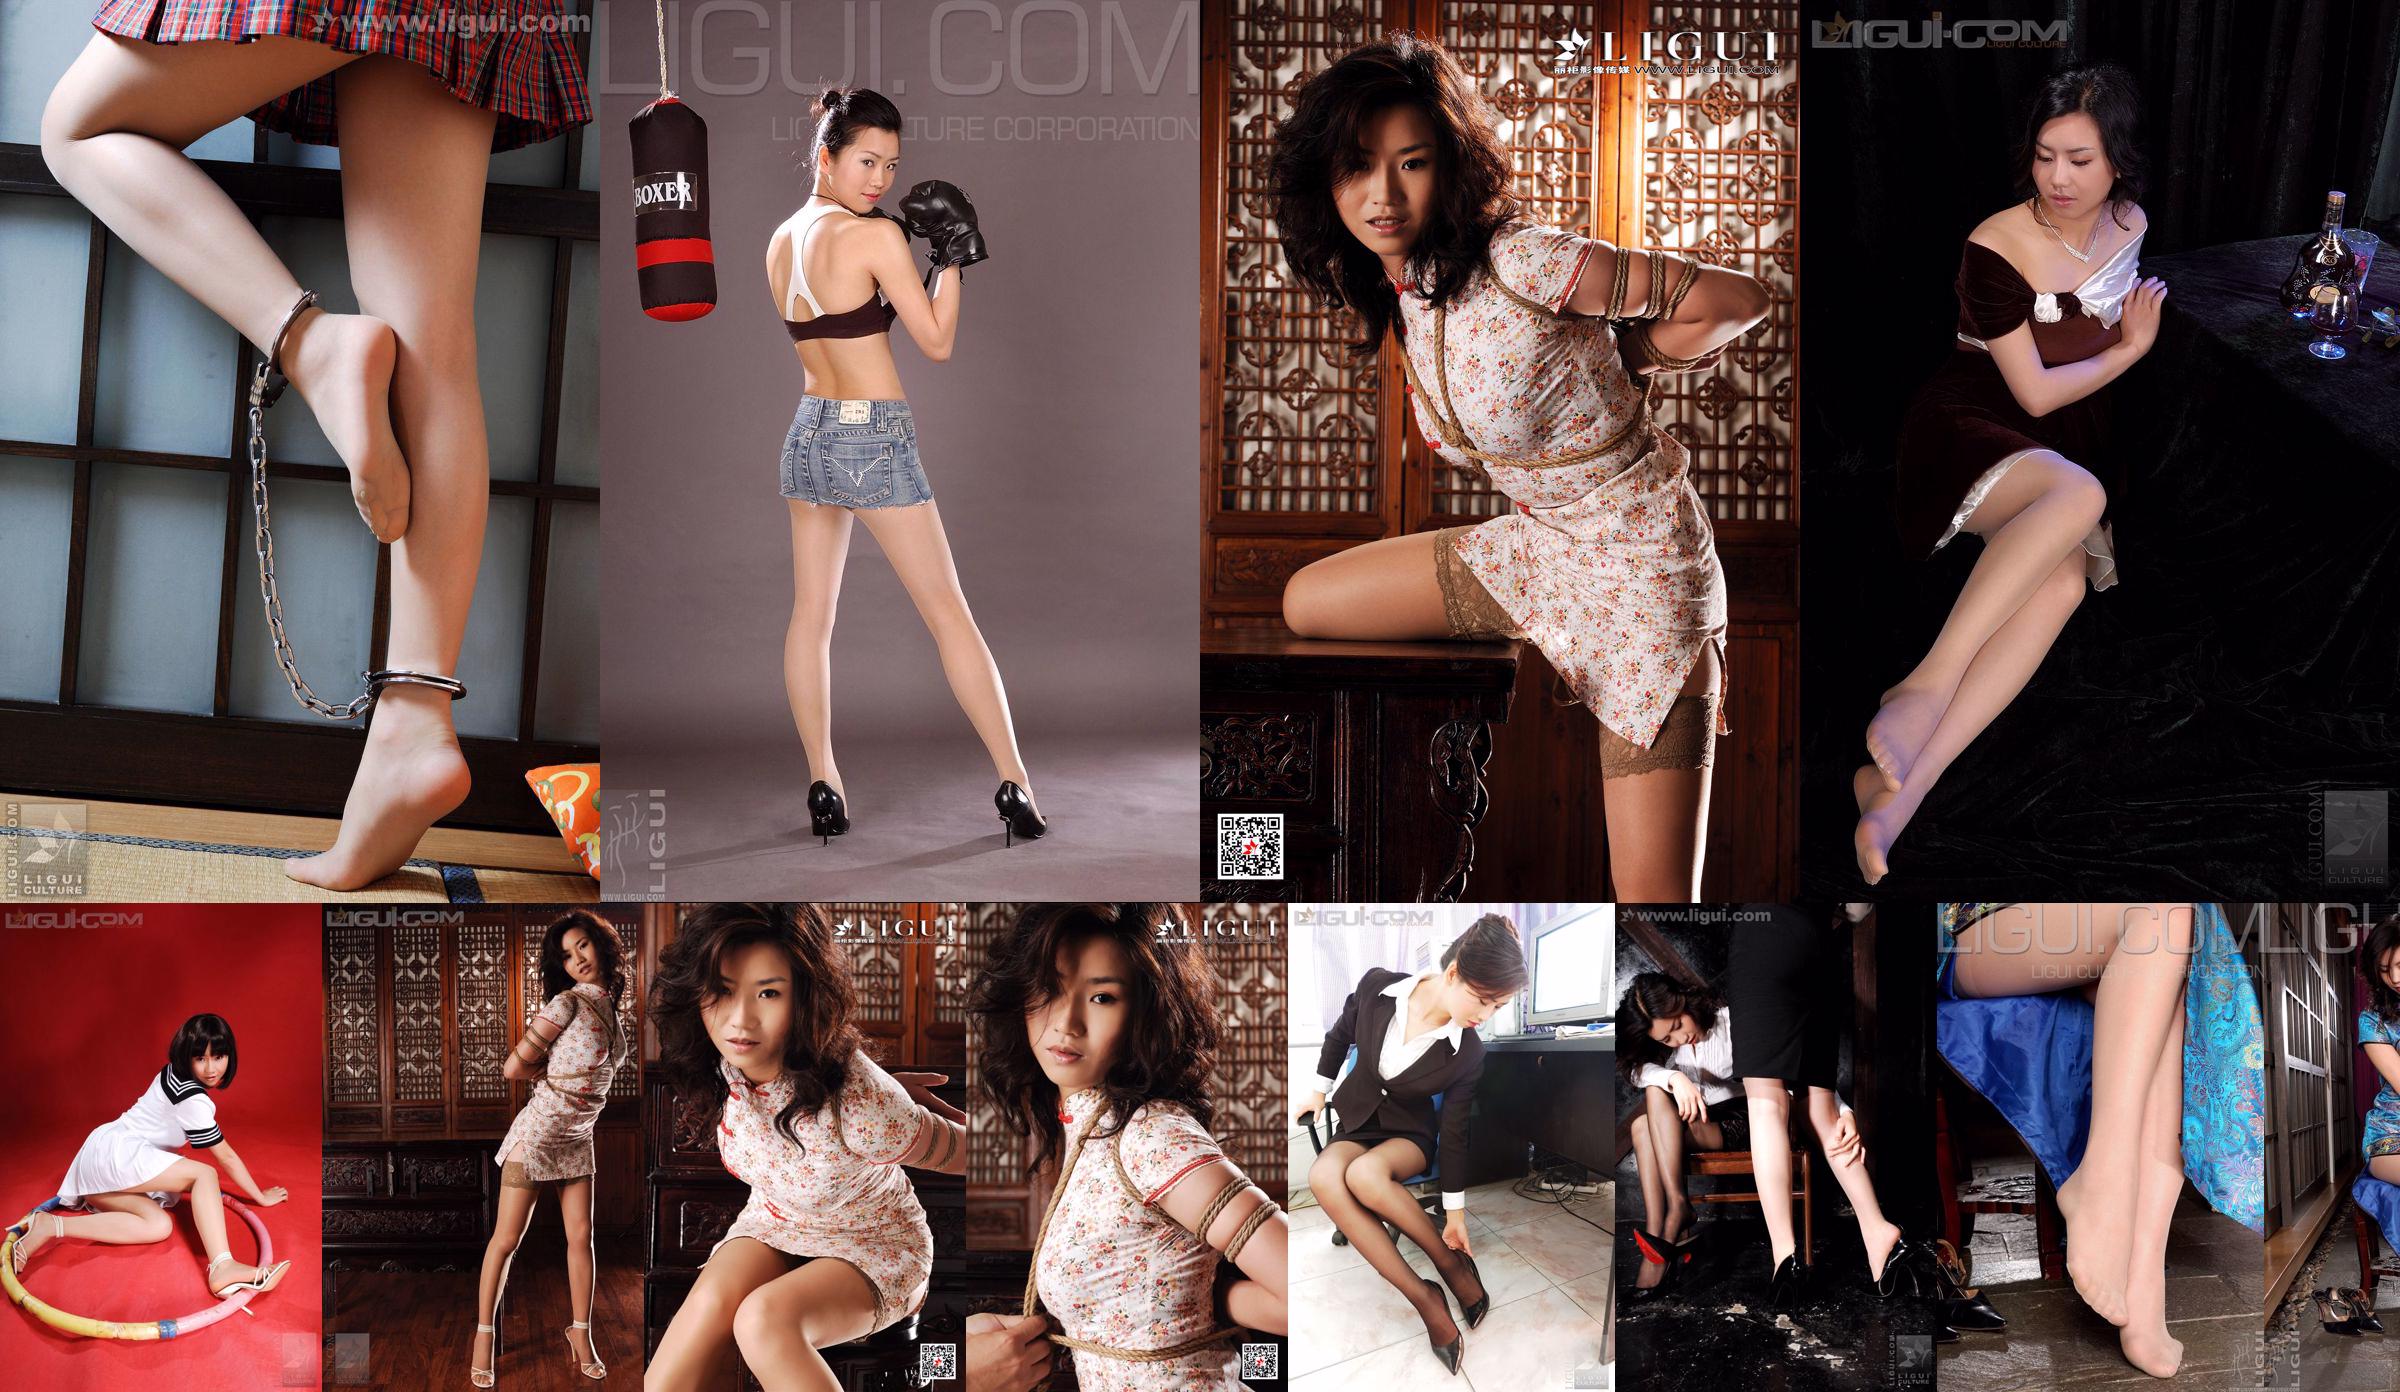 Modelo Yumi "Brincando com as meias no escritório" [丽 柜 LiGui] Foto do pé de seda com foto No.c593bd Página 1